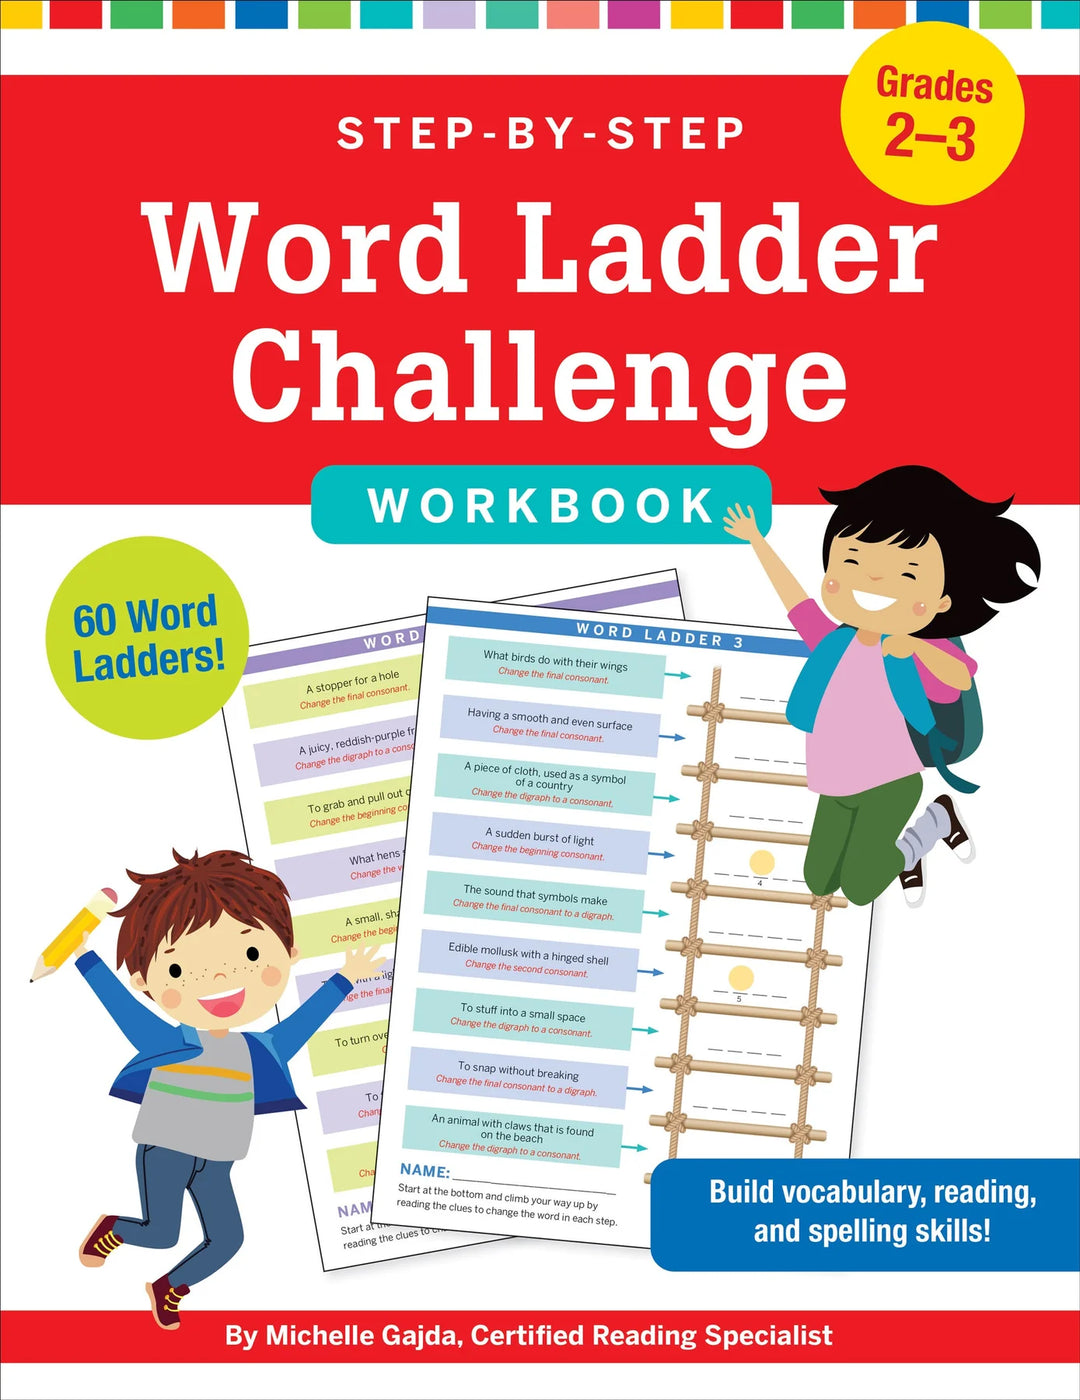 Word Ladder Challenge Workbook Grades 2-3